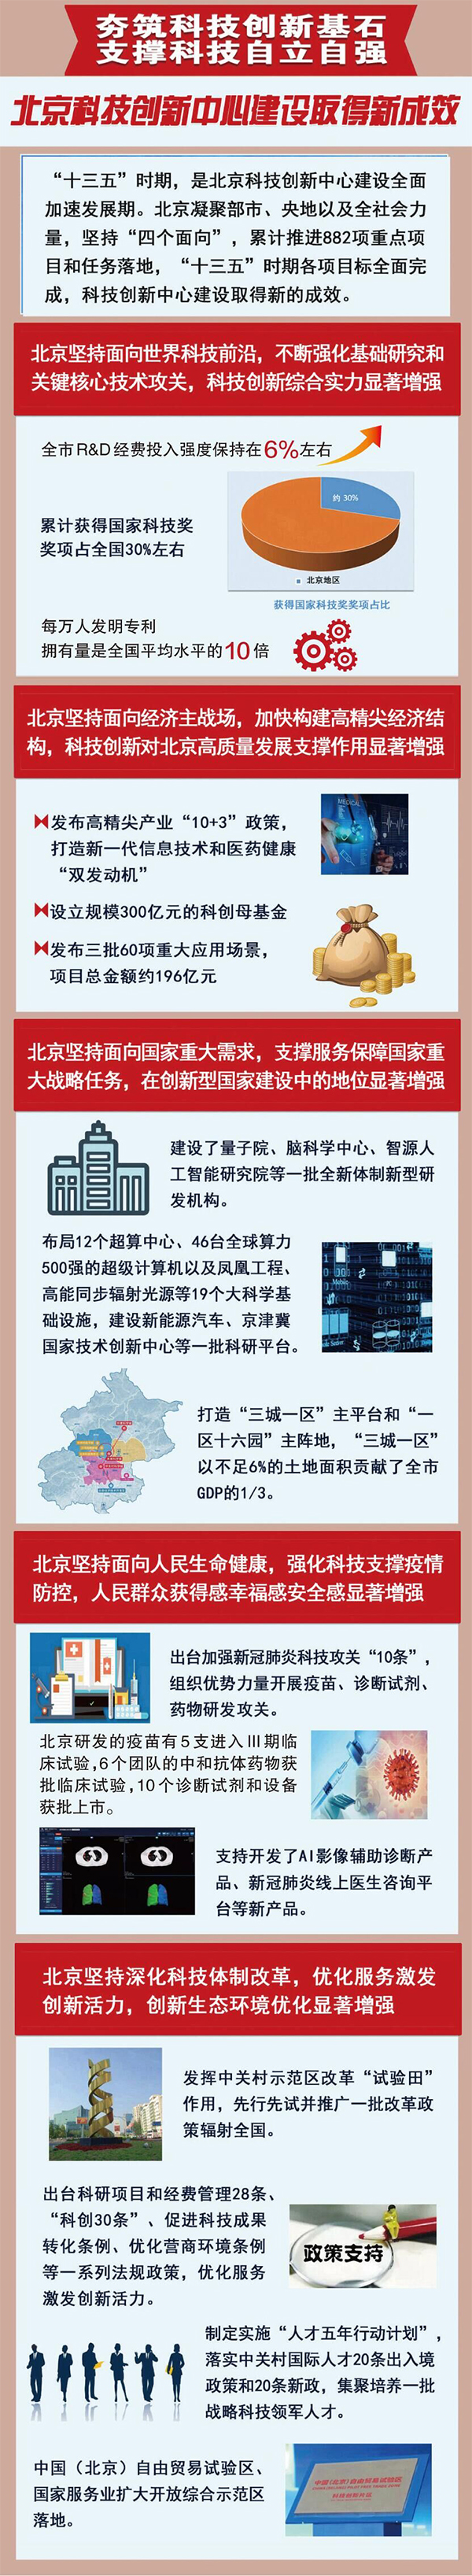 奋力谱华章 迈向新征程——党领导下的北京科技创新担当